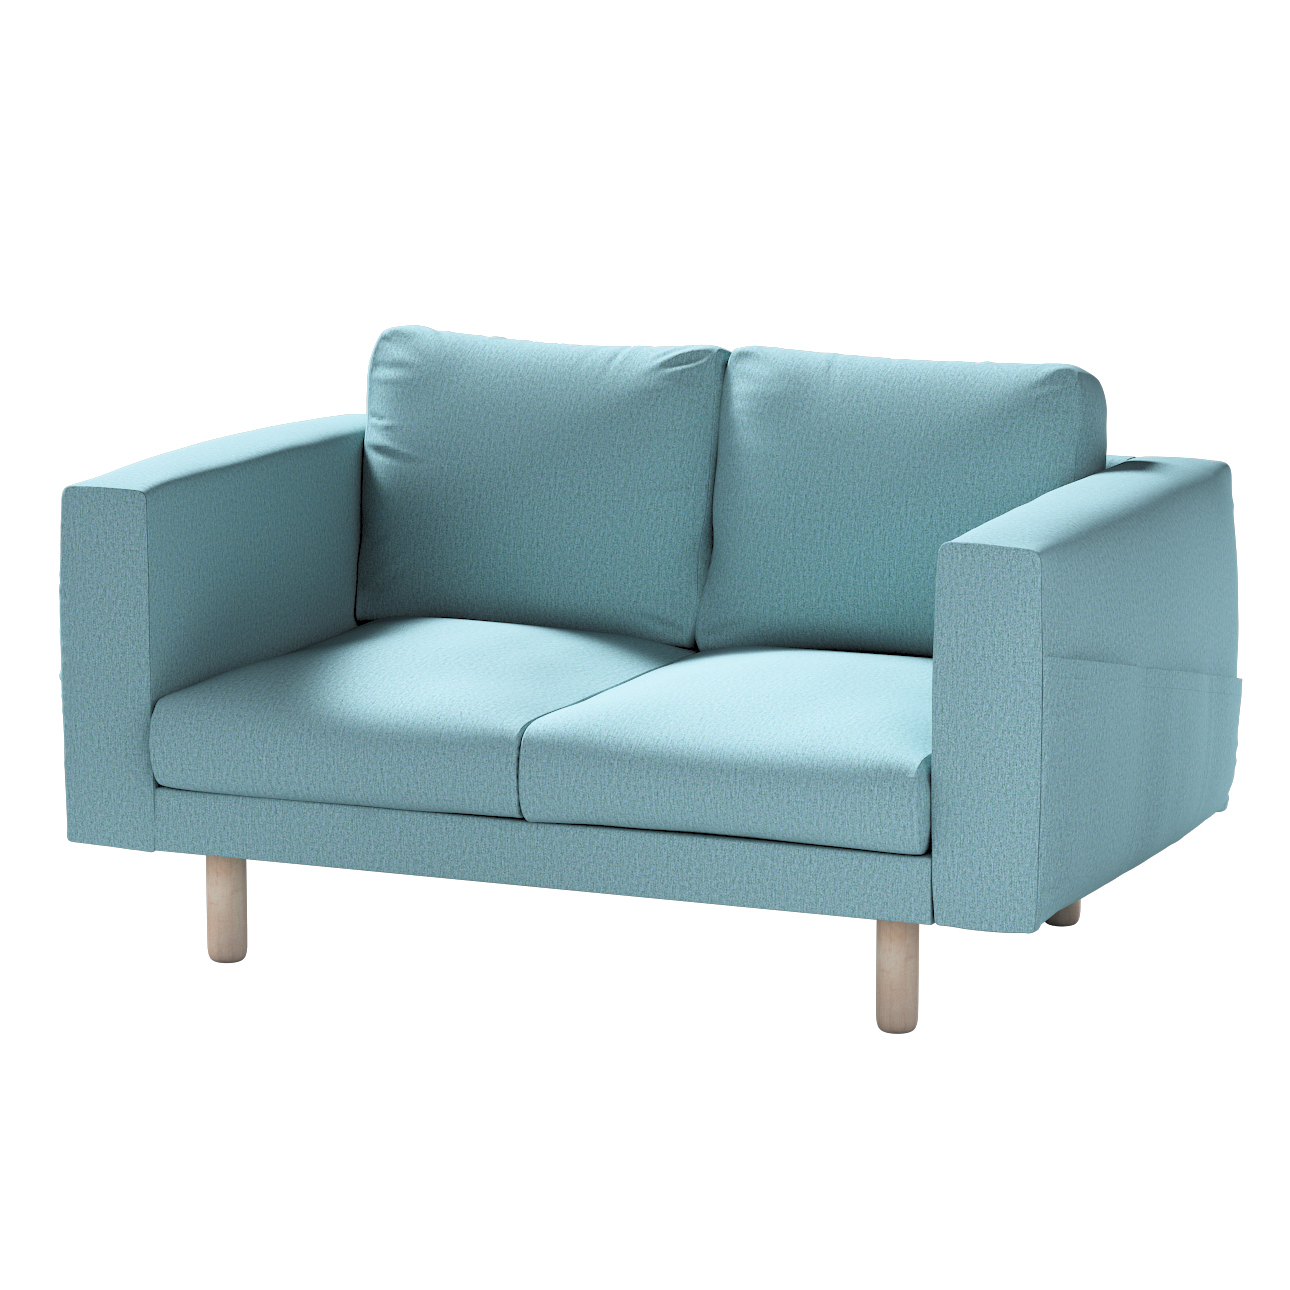 Bezug für Norsborg 2-Sitzer Sofa, blau, Norsborg 2-Sitzer Sofabezug, Madrid günstig online kaufen